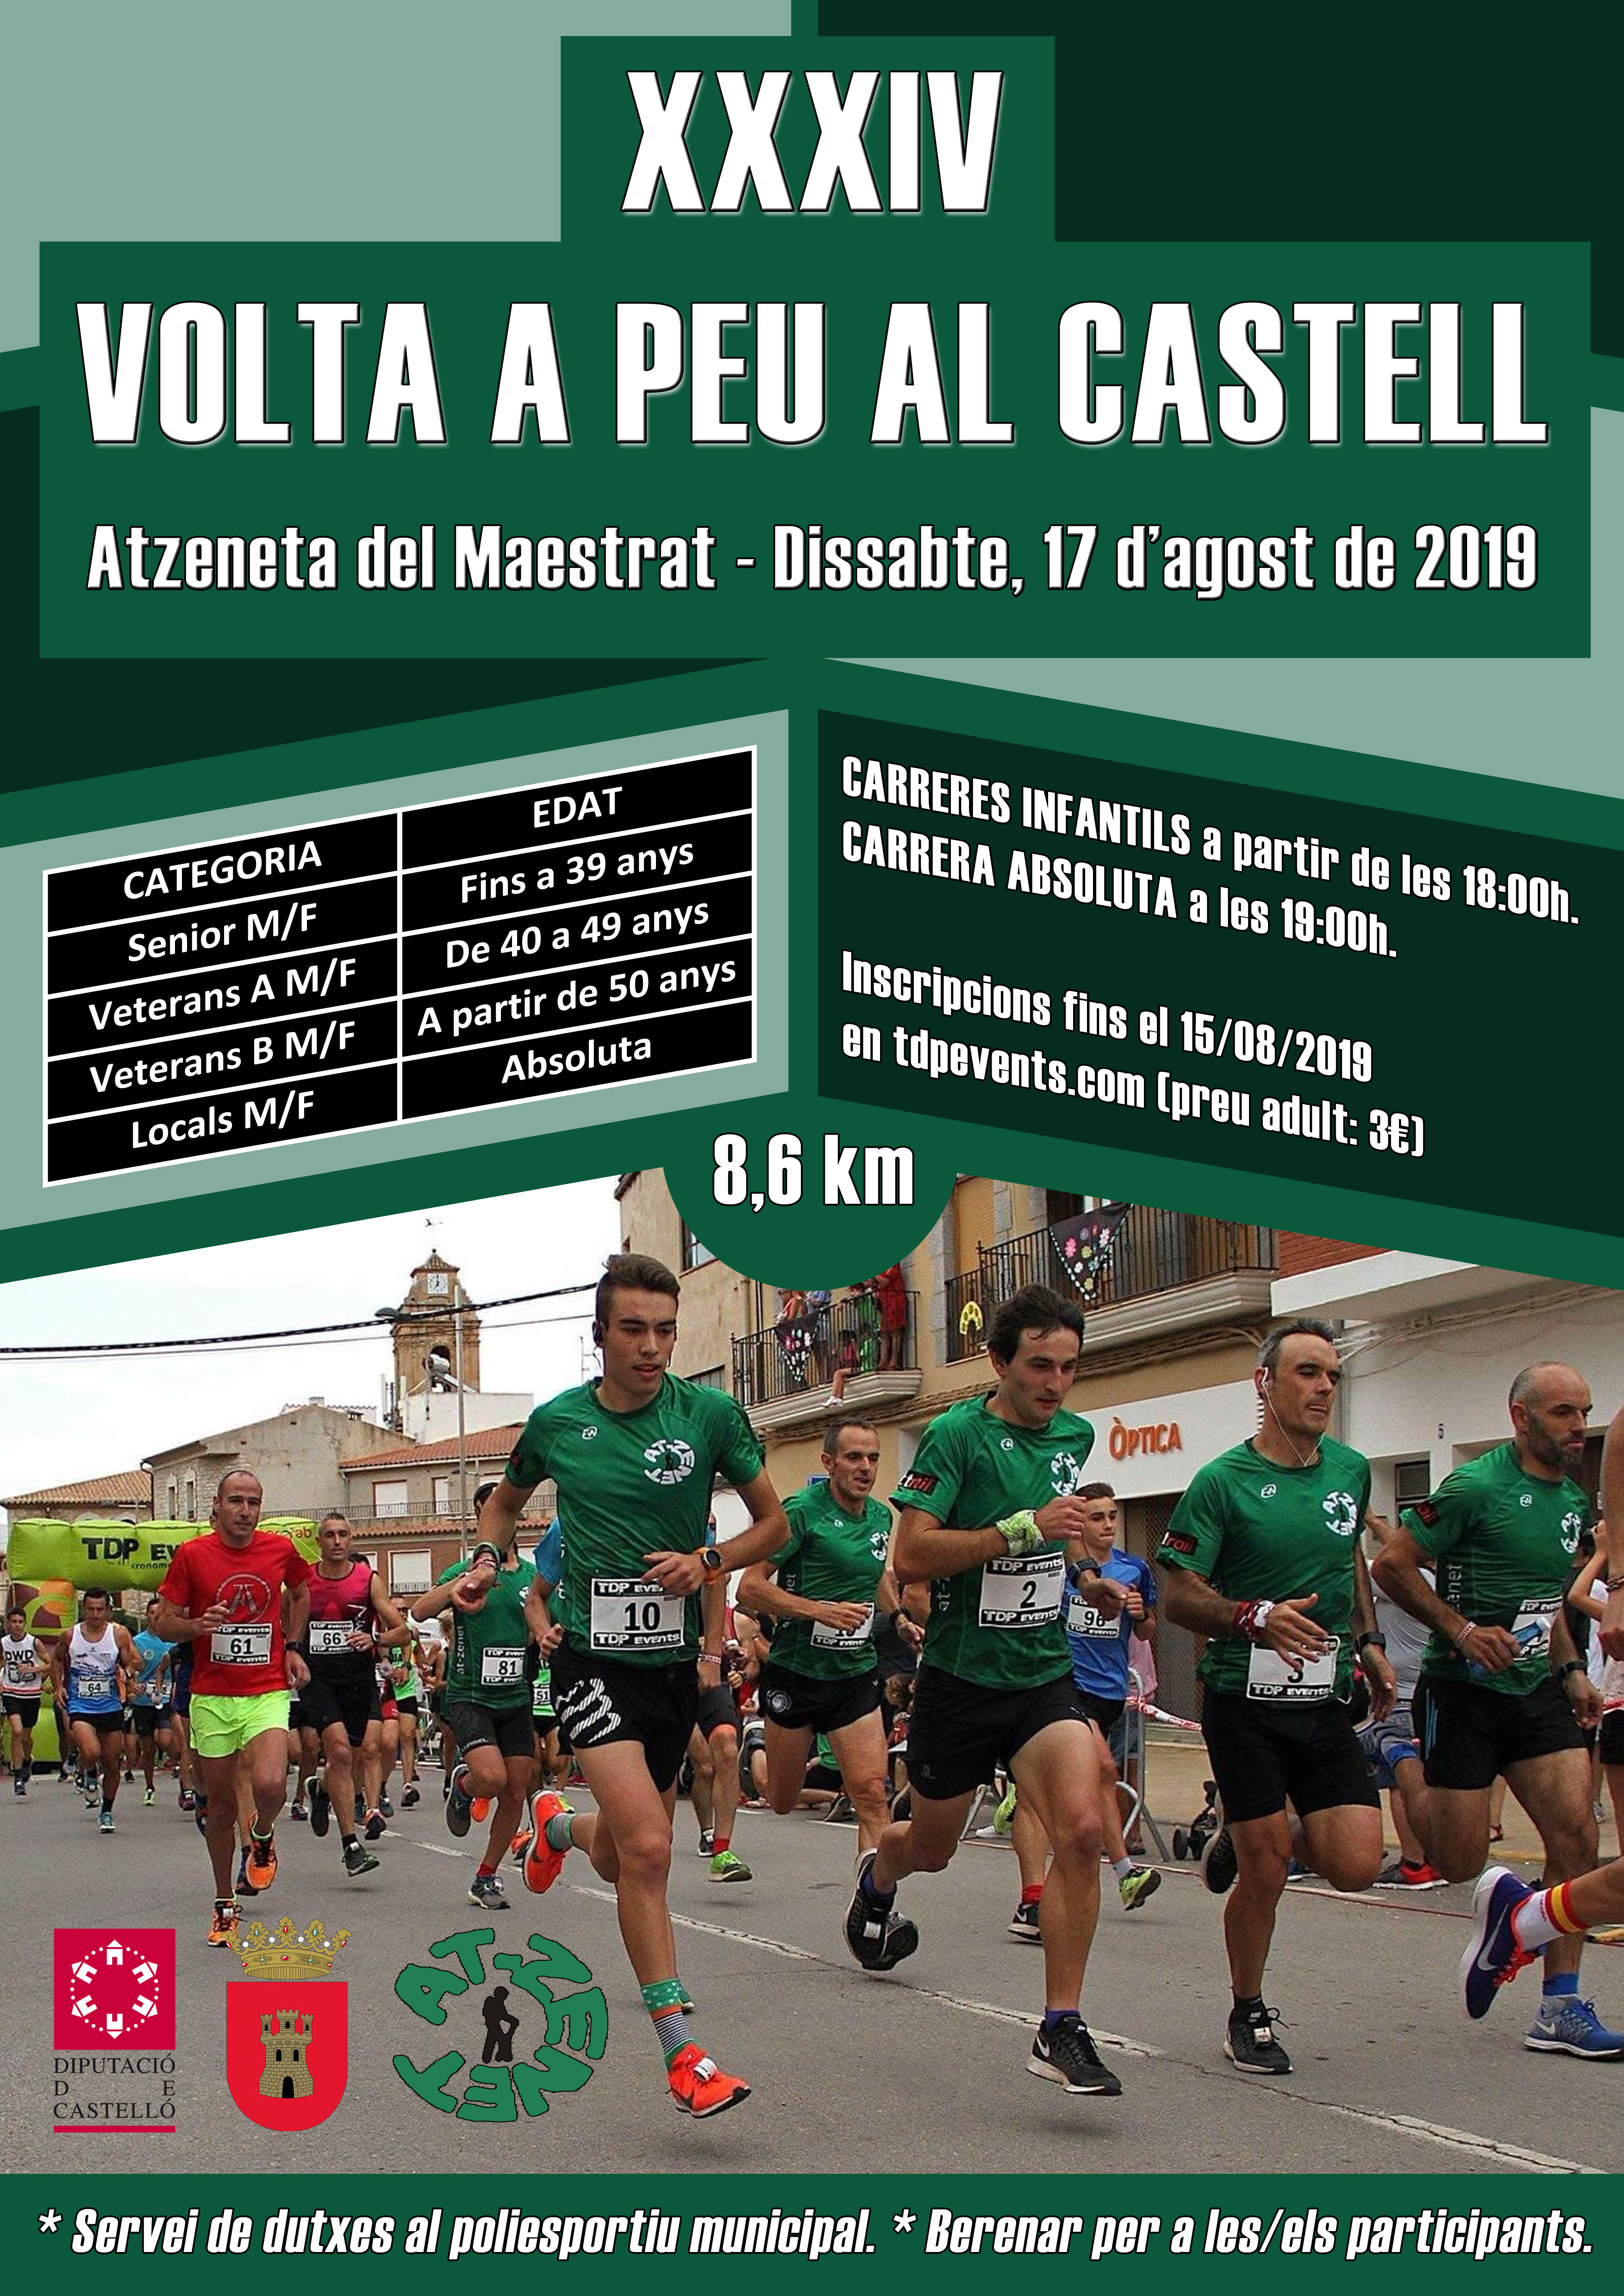 "XXXIV Volta a peu al Castell"